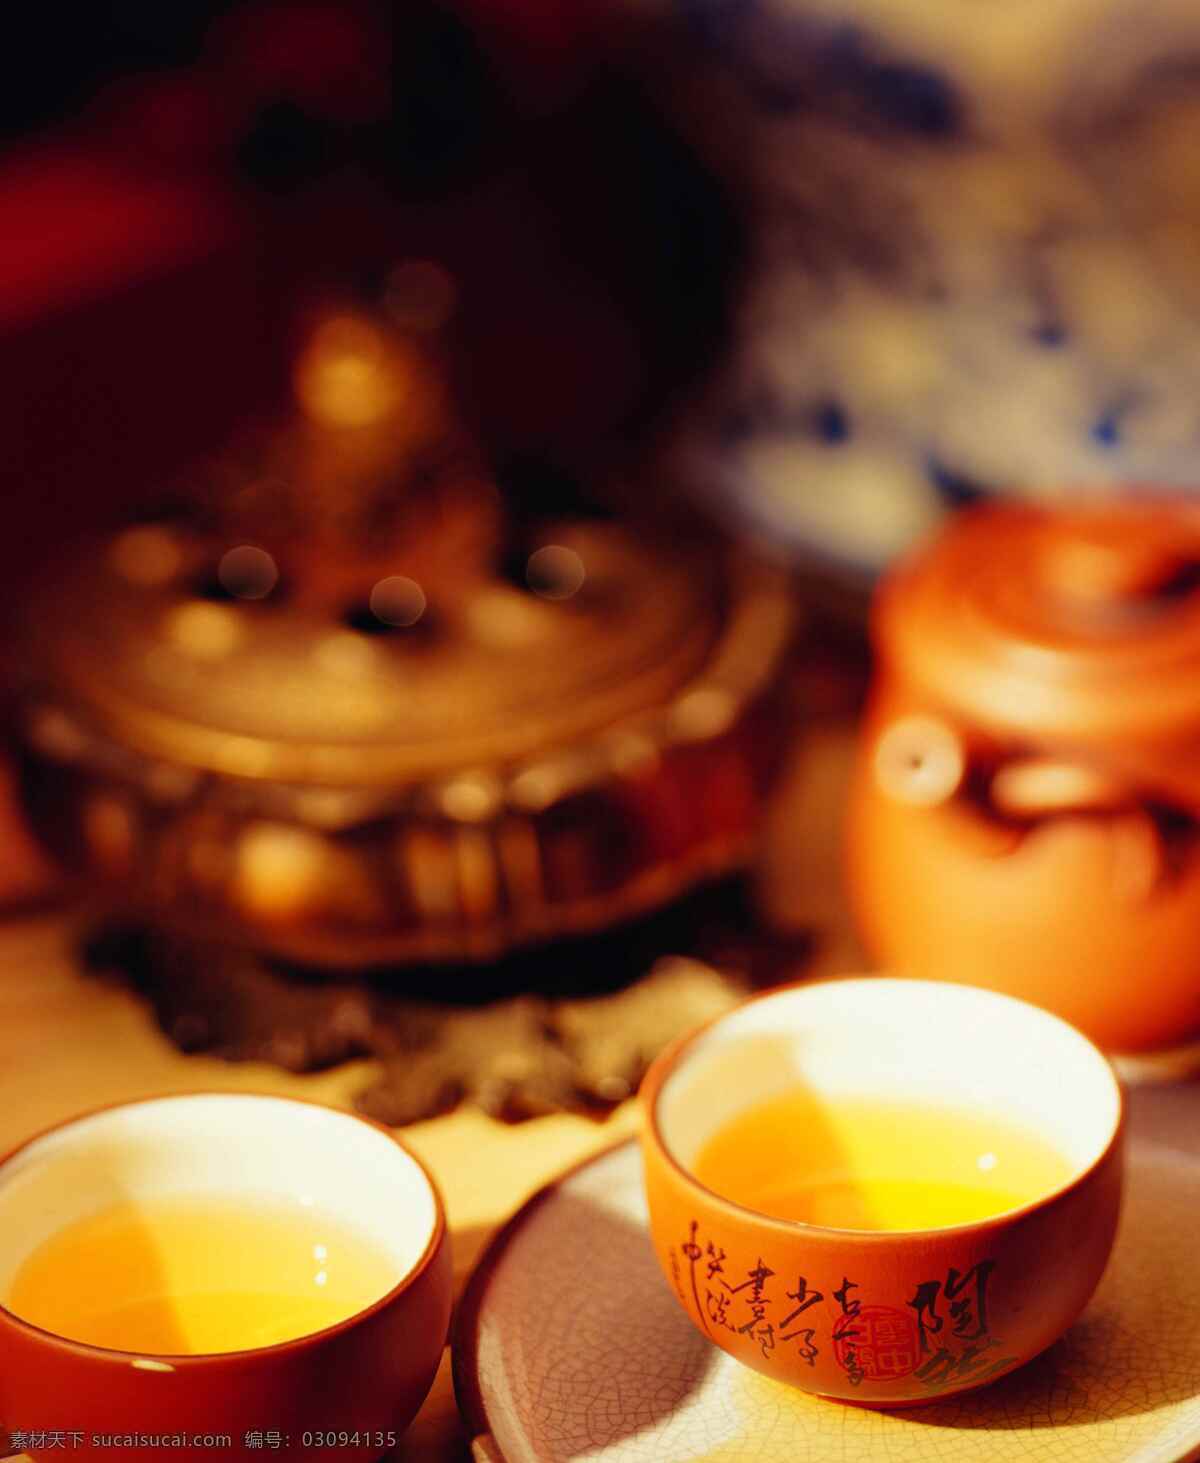 一杯 清澈 茶 茶杯 茶背景 茶道 茶壶 茶具 泡茶 啥文化 沏茶 茶壶摄影 一杯清茶 风景 生活 旅游餐饮